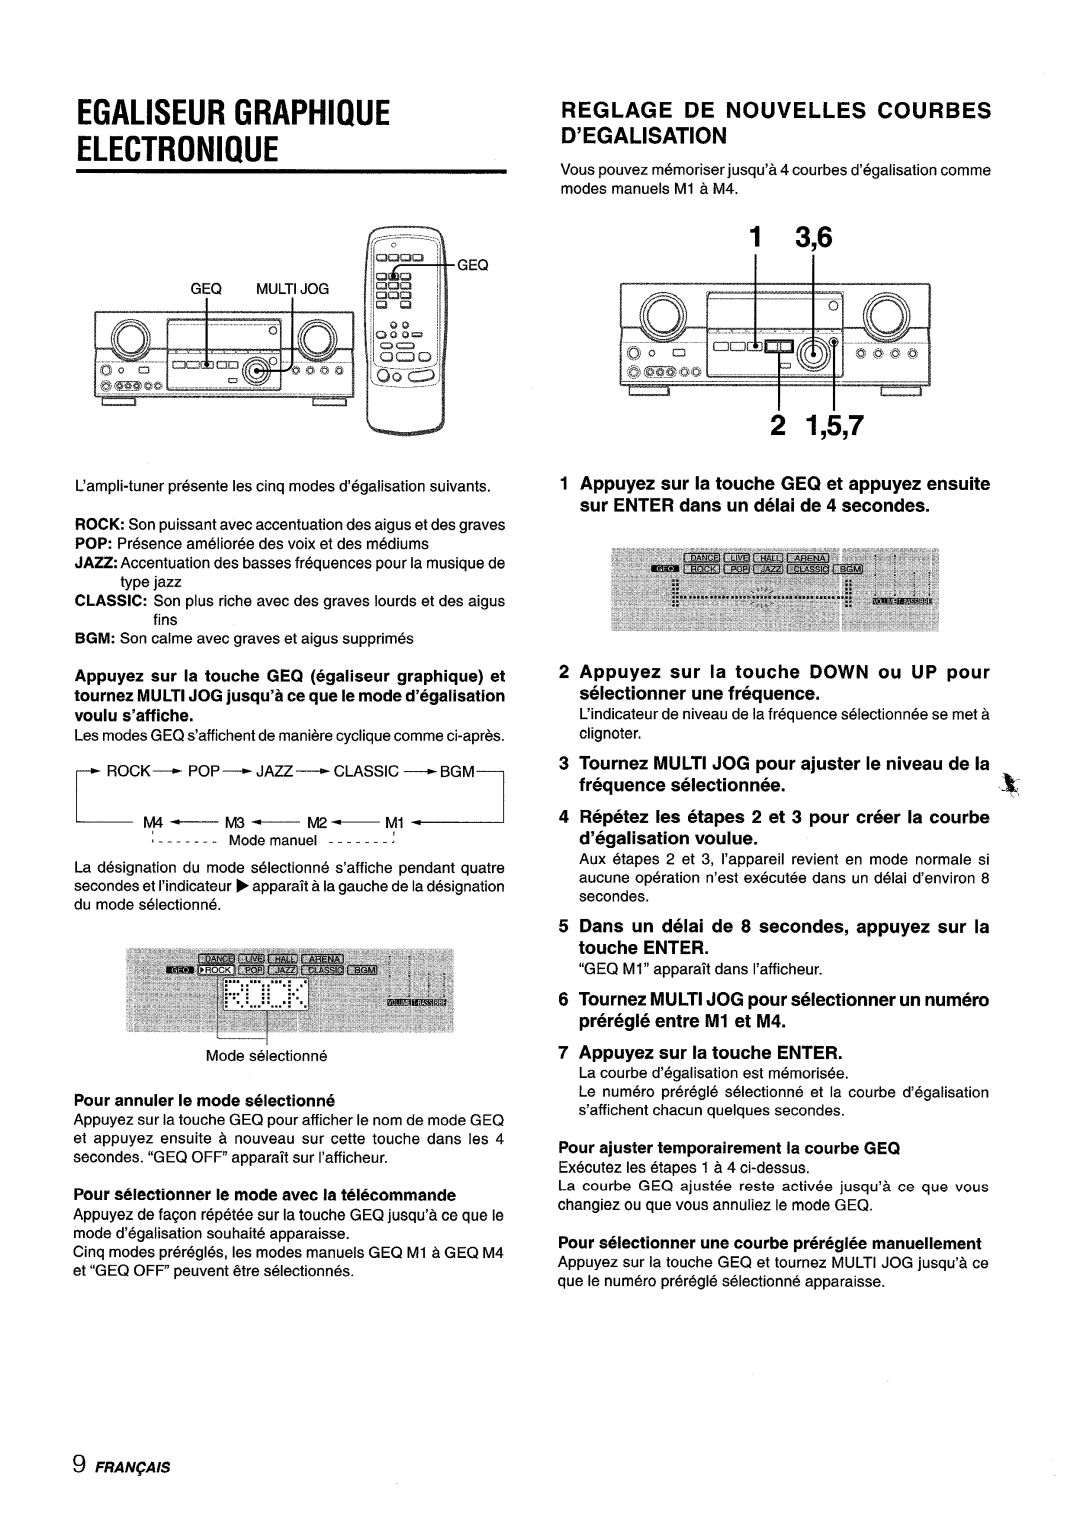 Sony AV-DV75 Egaliseur Graphique Electronique, 1 3,6, Reglage De Nouvelles Courbes D’Egalisation, Tournez, Multi Jog, pour 